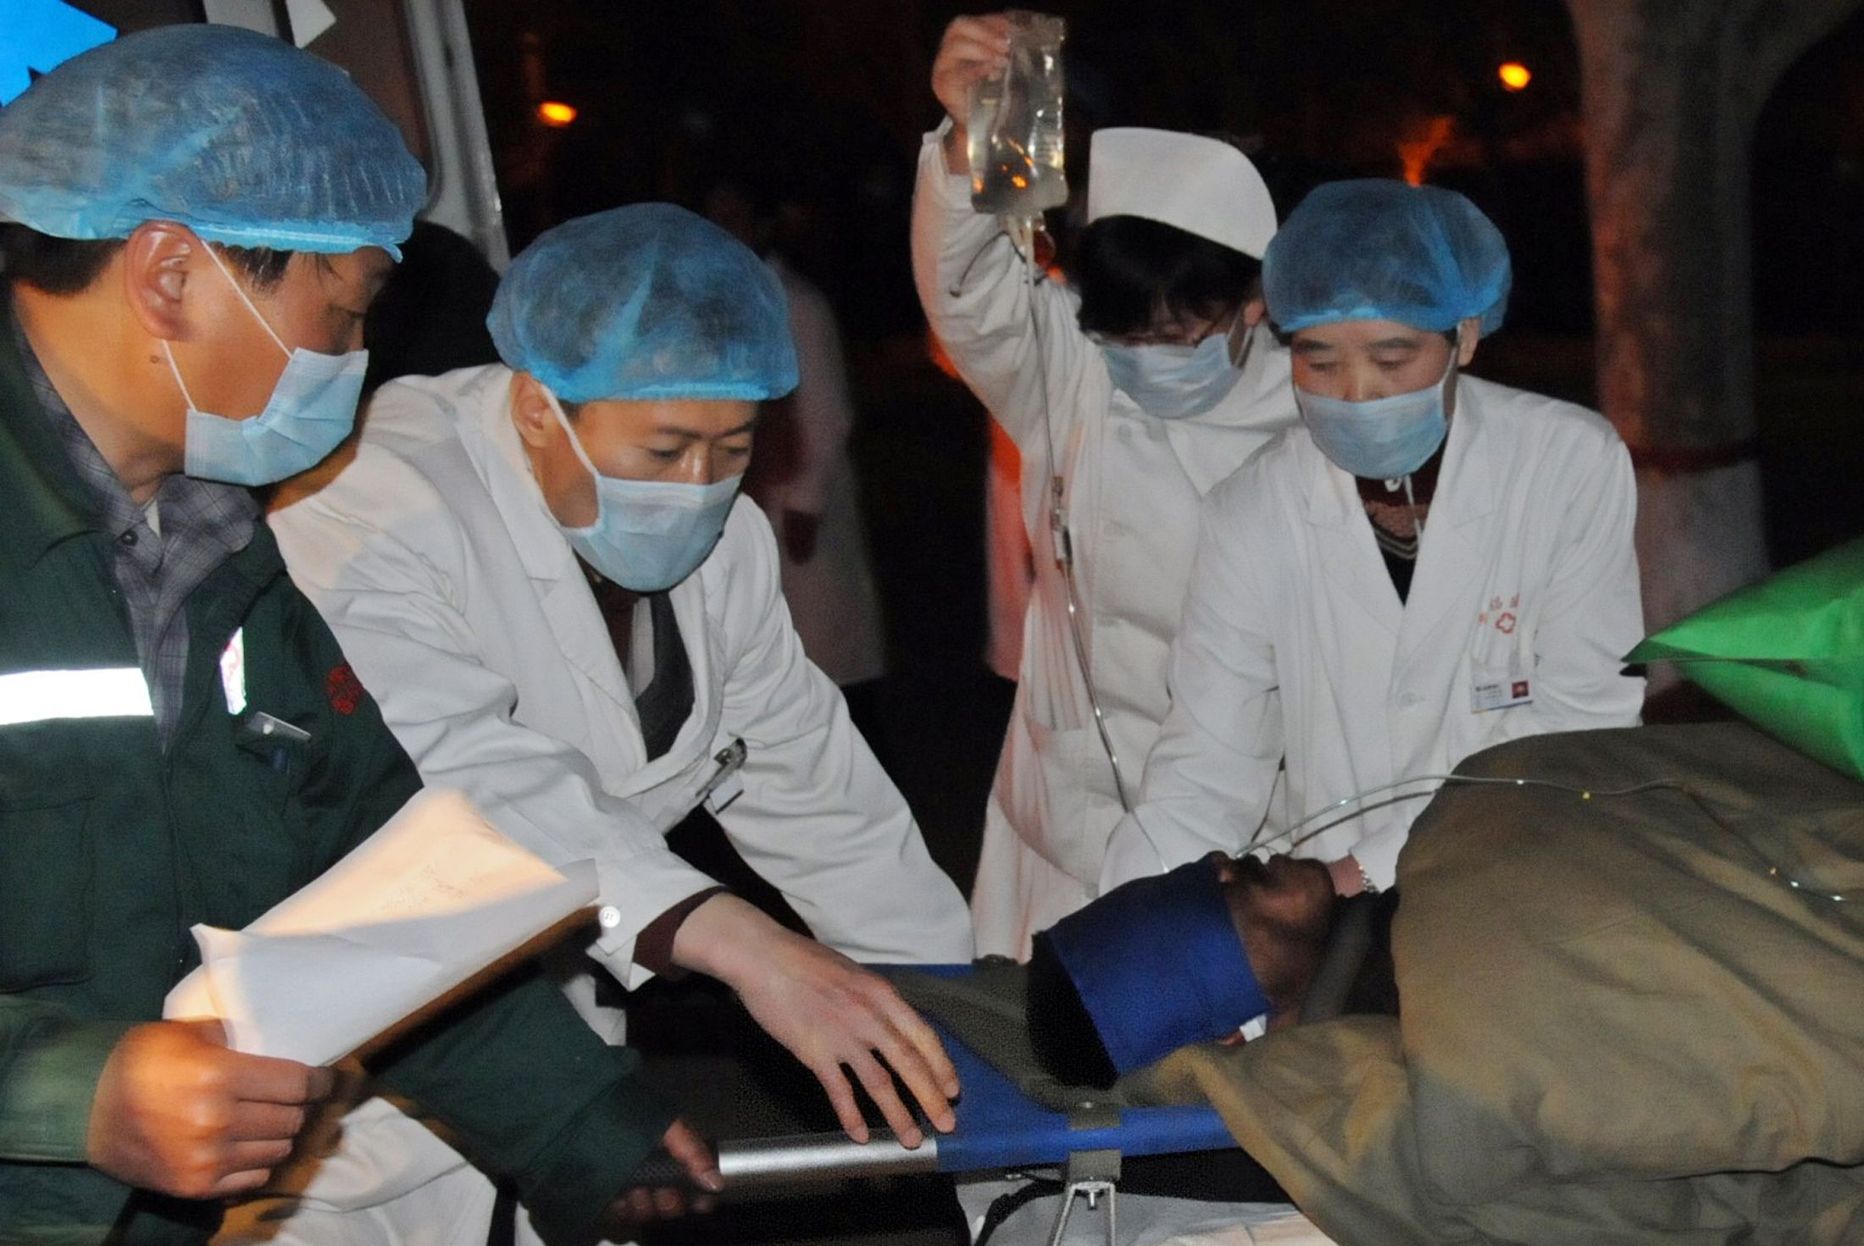 Shanxi provintsi arstid päästetud kaevurit haiglaravile viimas.